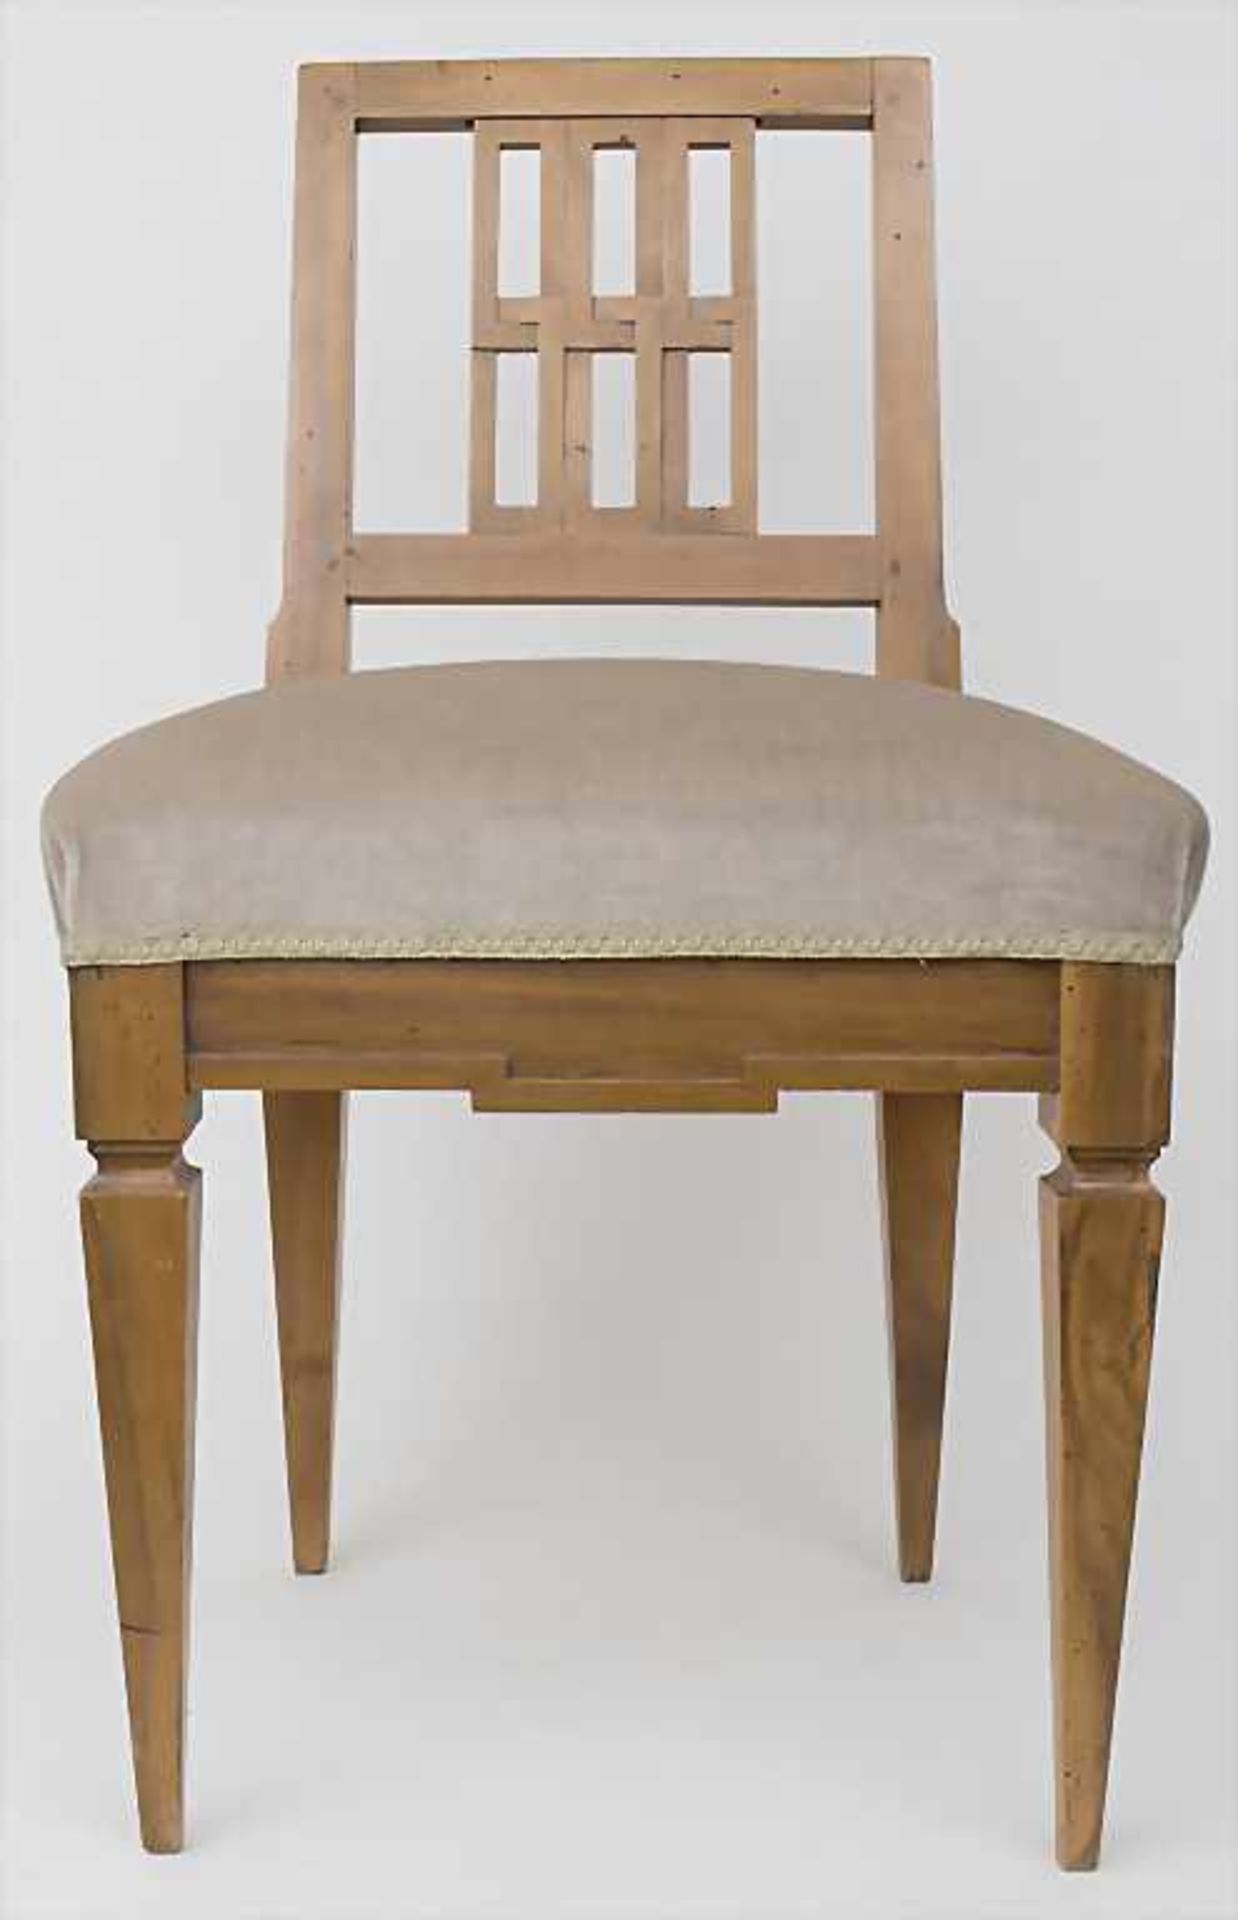 Klassizismus Stuhl / A classicism chair, um 1800